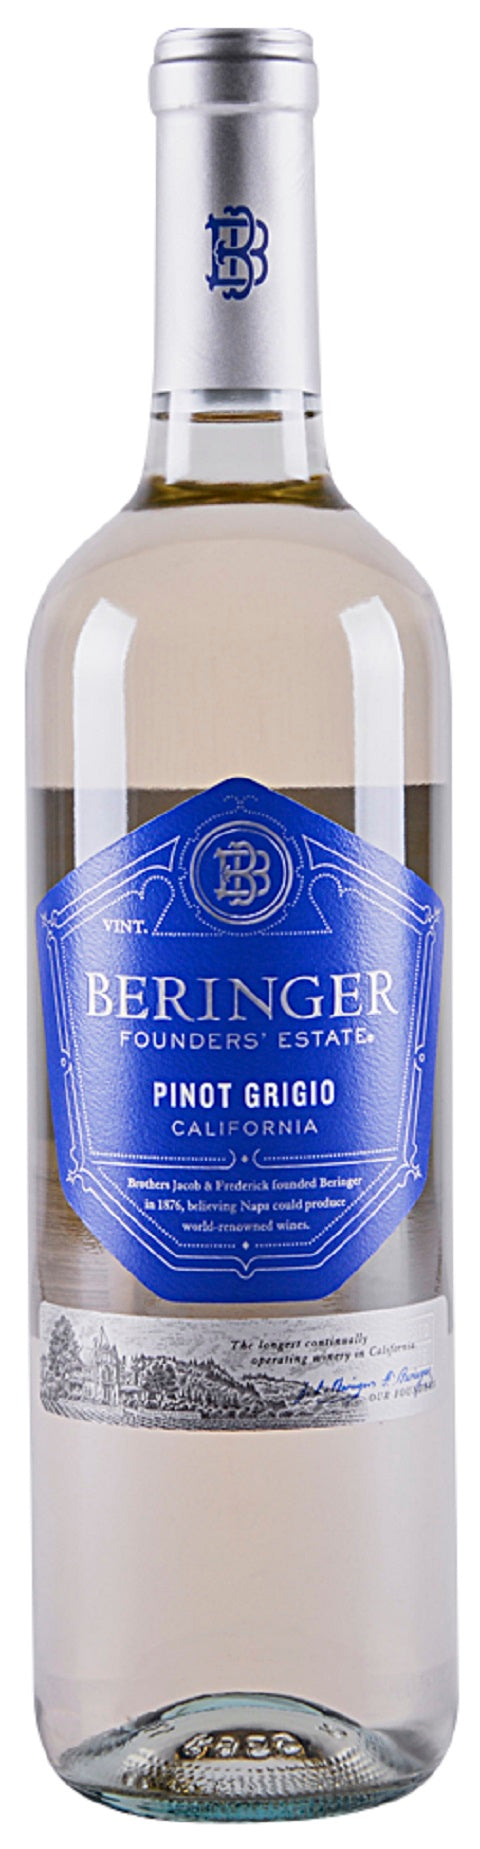 Beringer Pinot Grigio Founders' Estate 2019